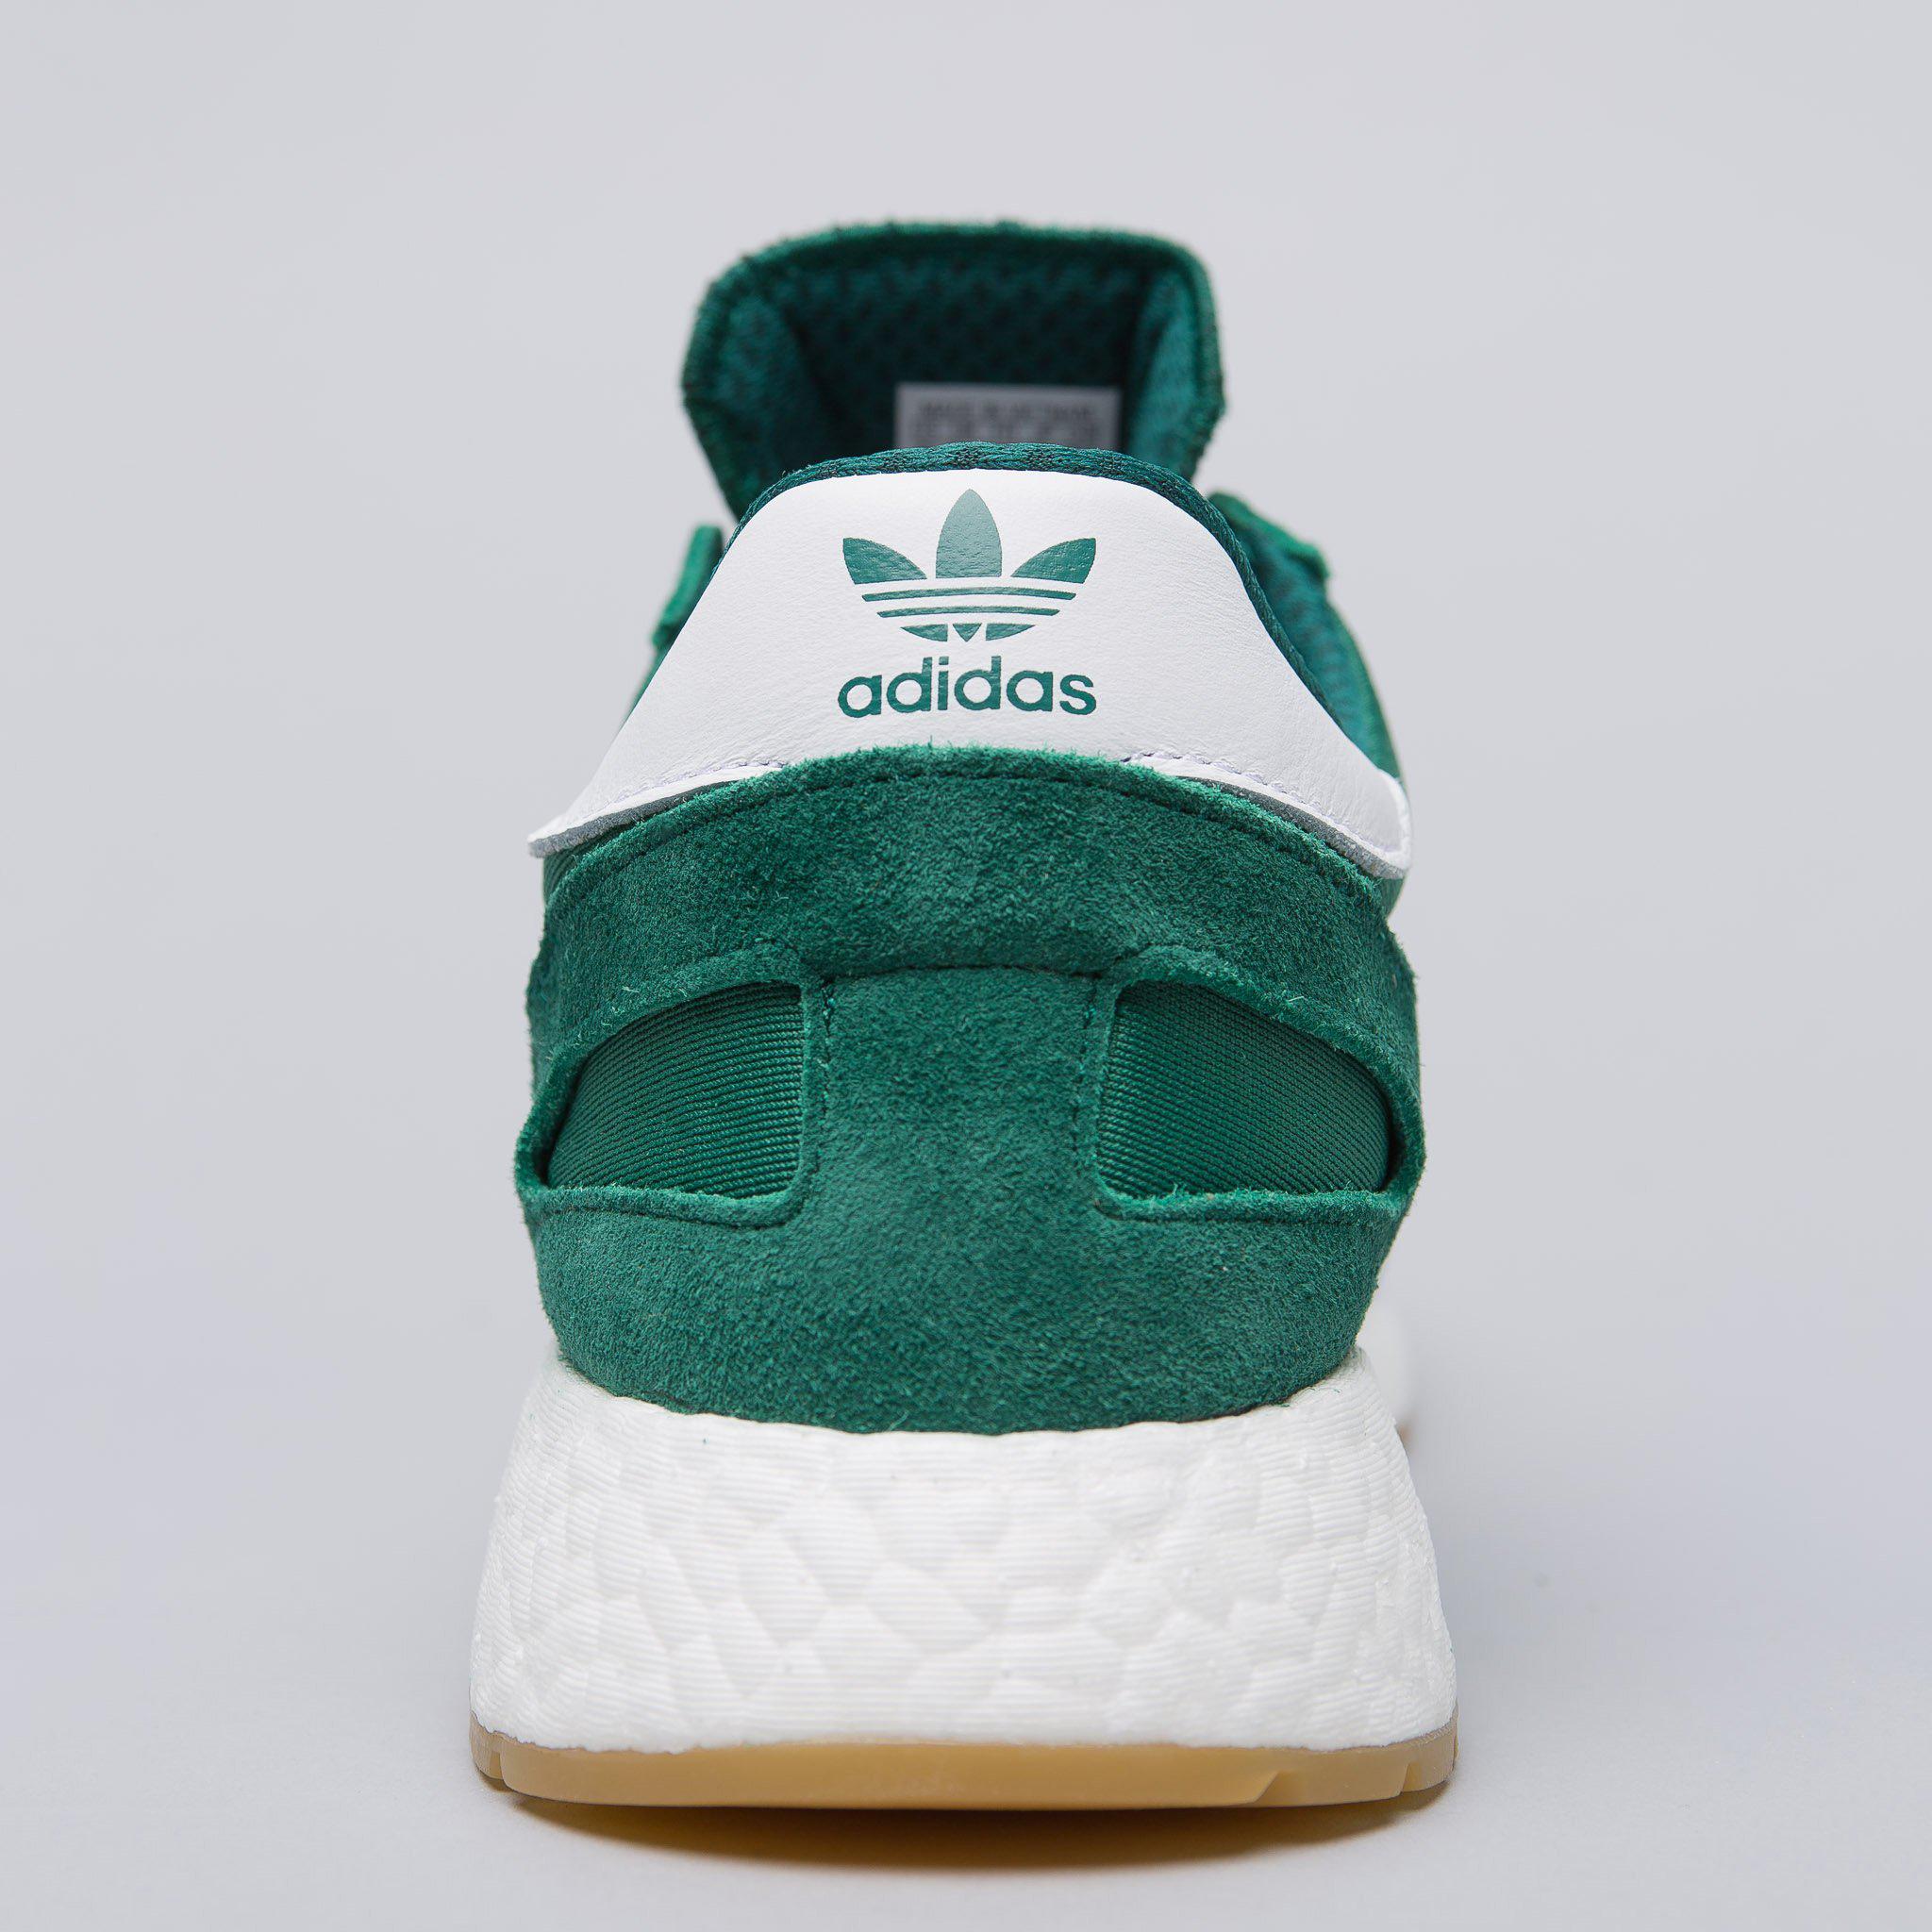 adidas green iniki shoes